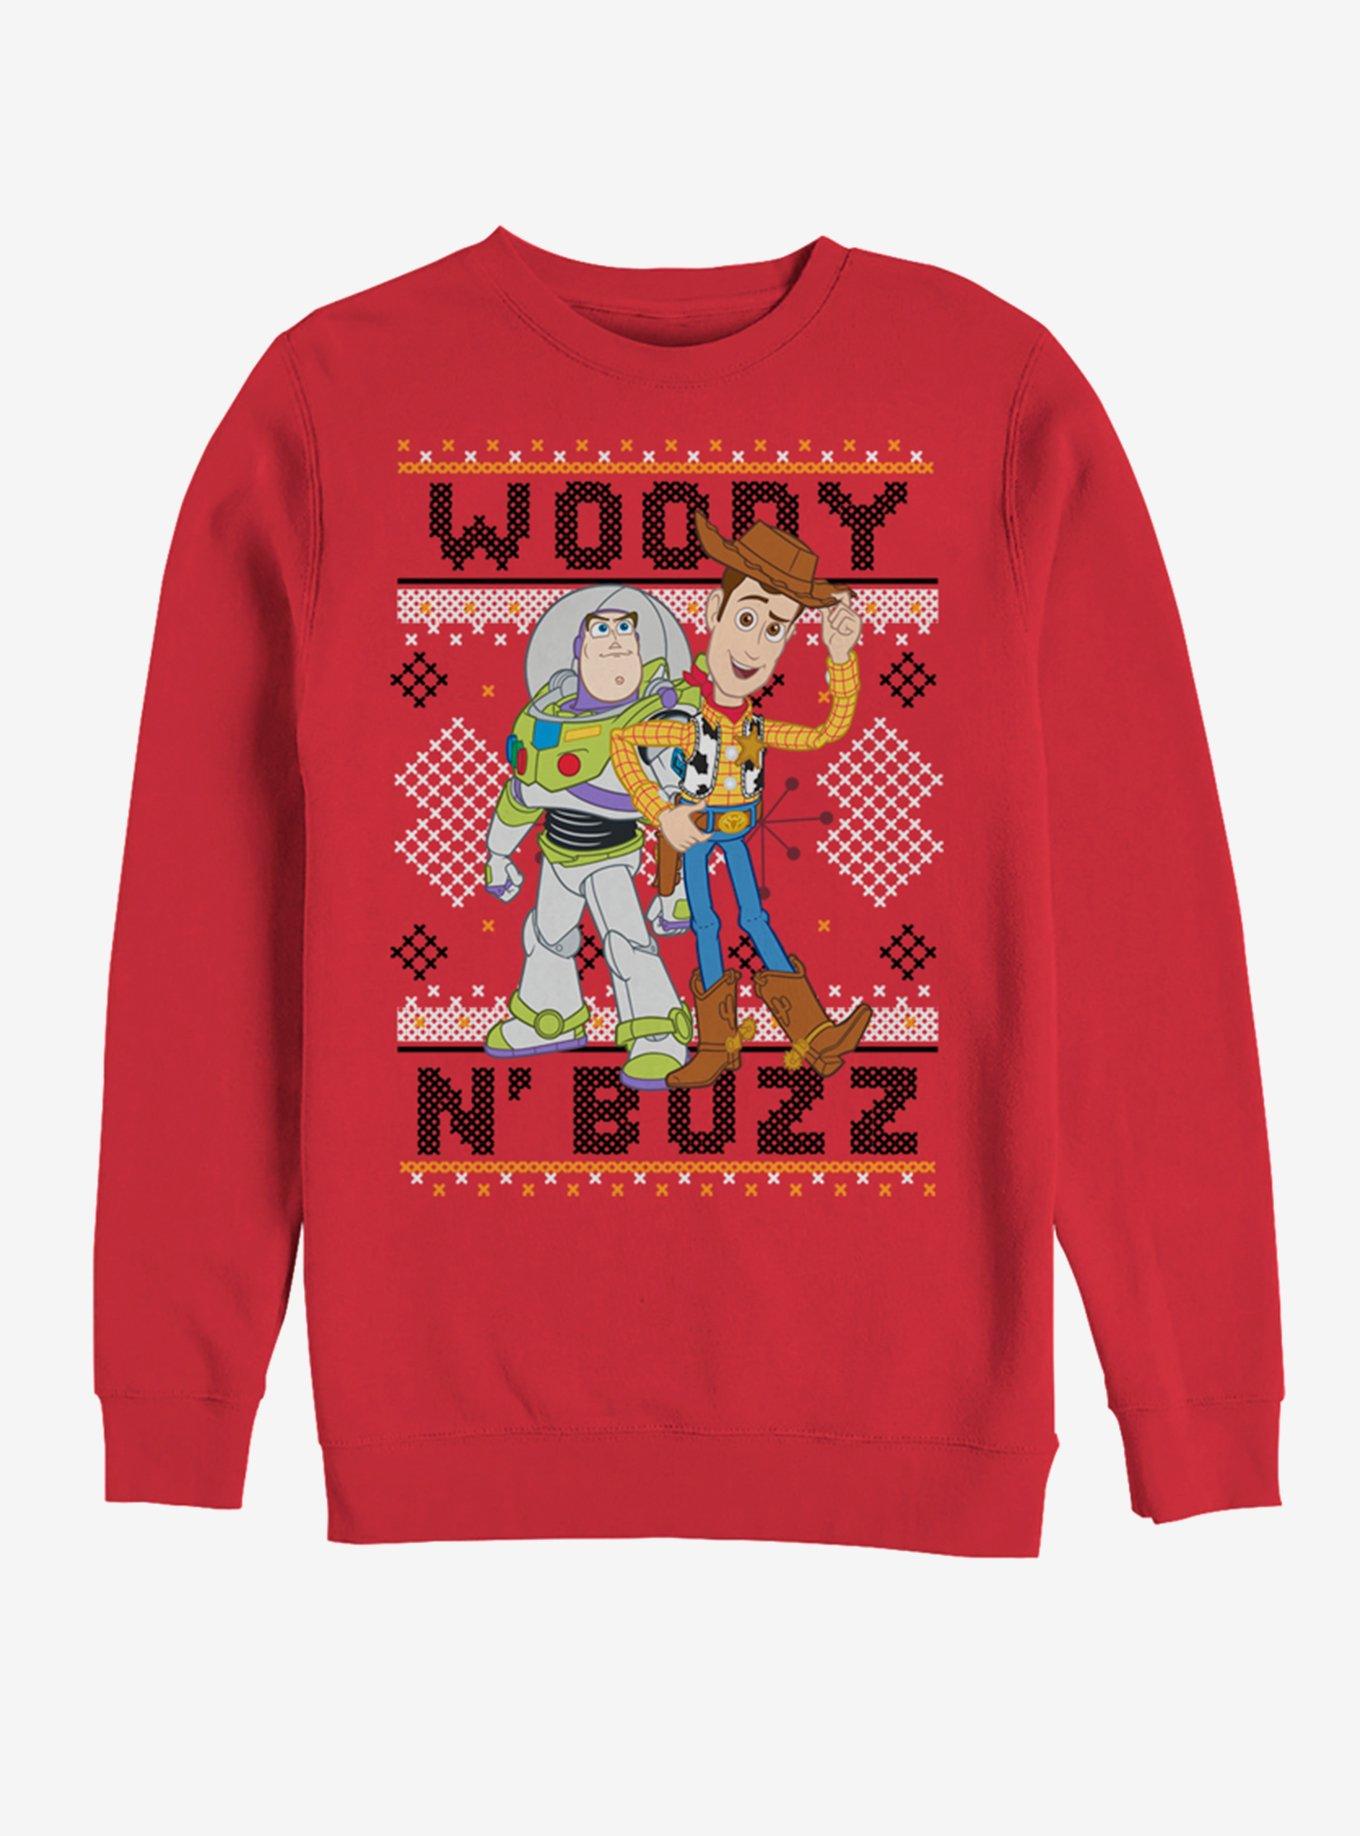 Disney Pixar Toy Story Woody Buzz Sew Sweatshirt